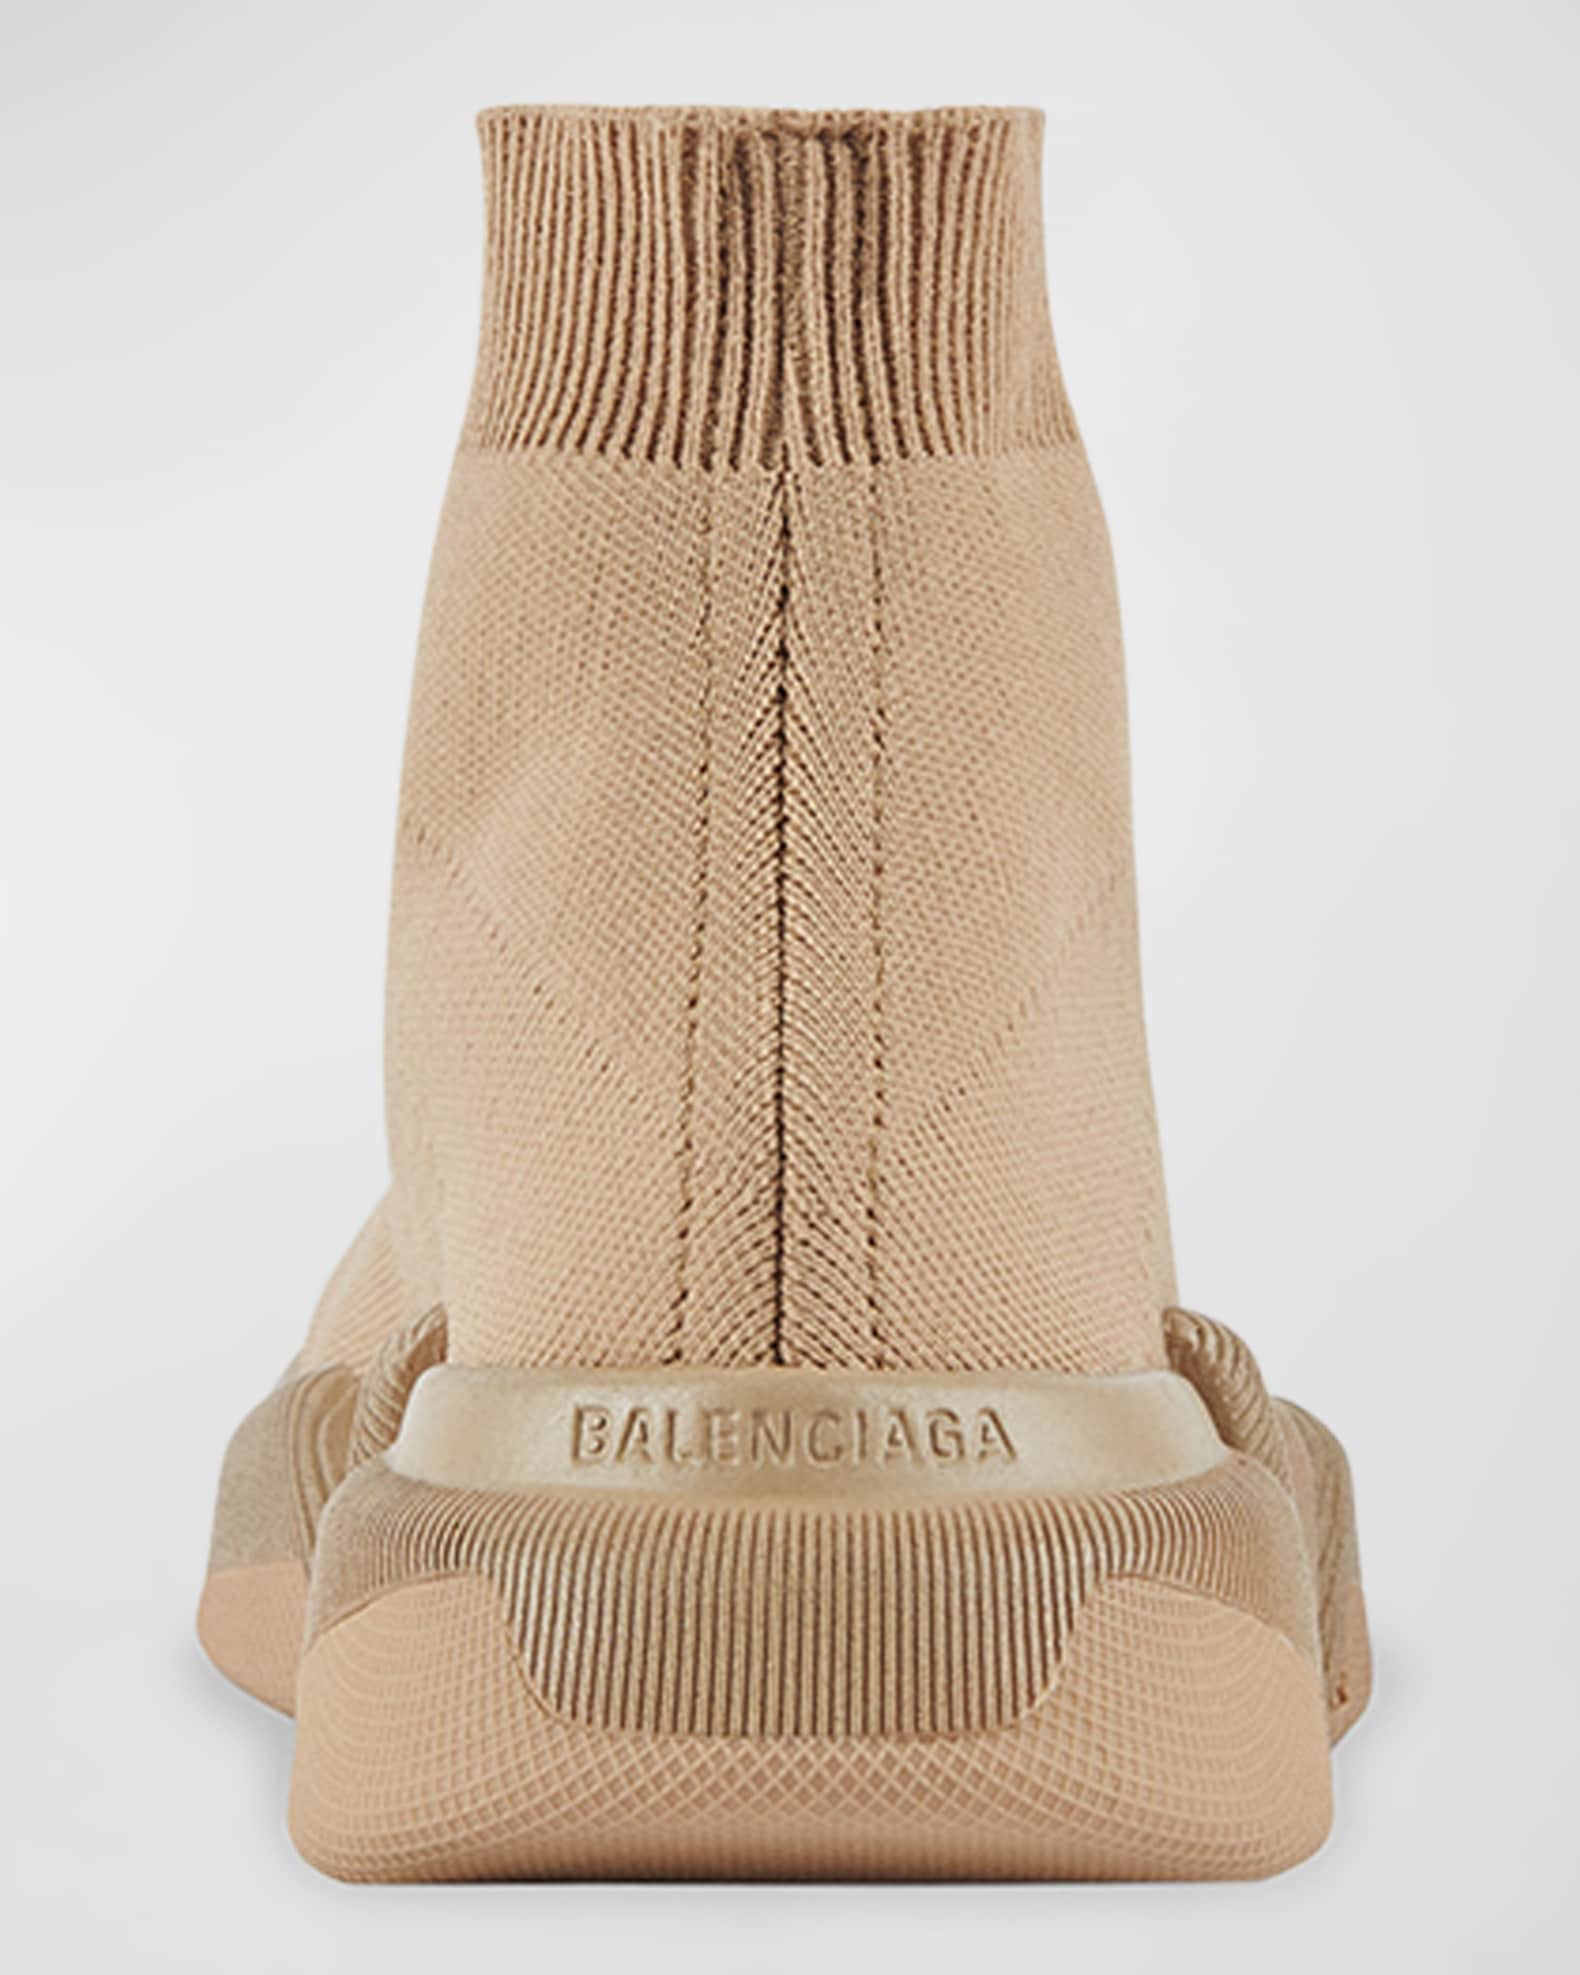 Balenciaga Women's Speed 2.0 LT Sock Sneakers - Beige - Size 5